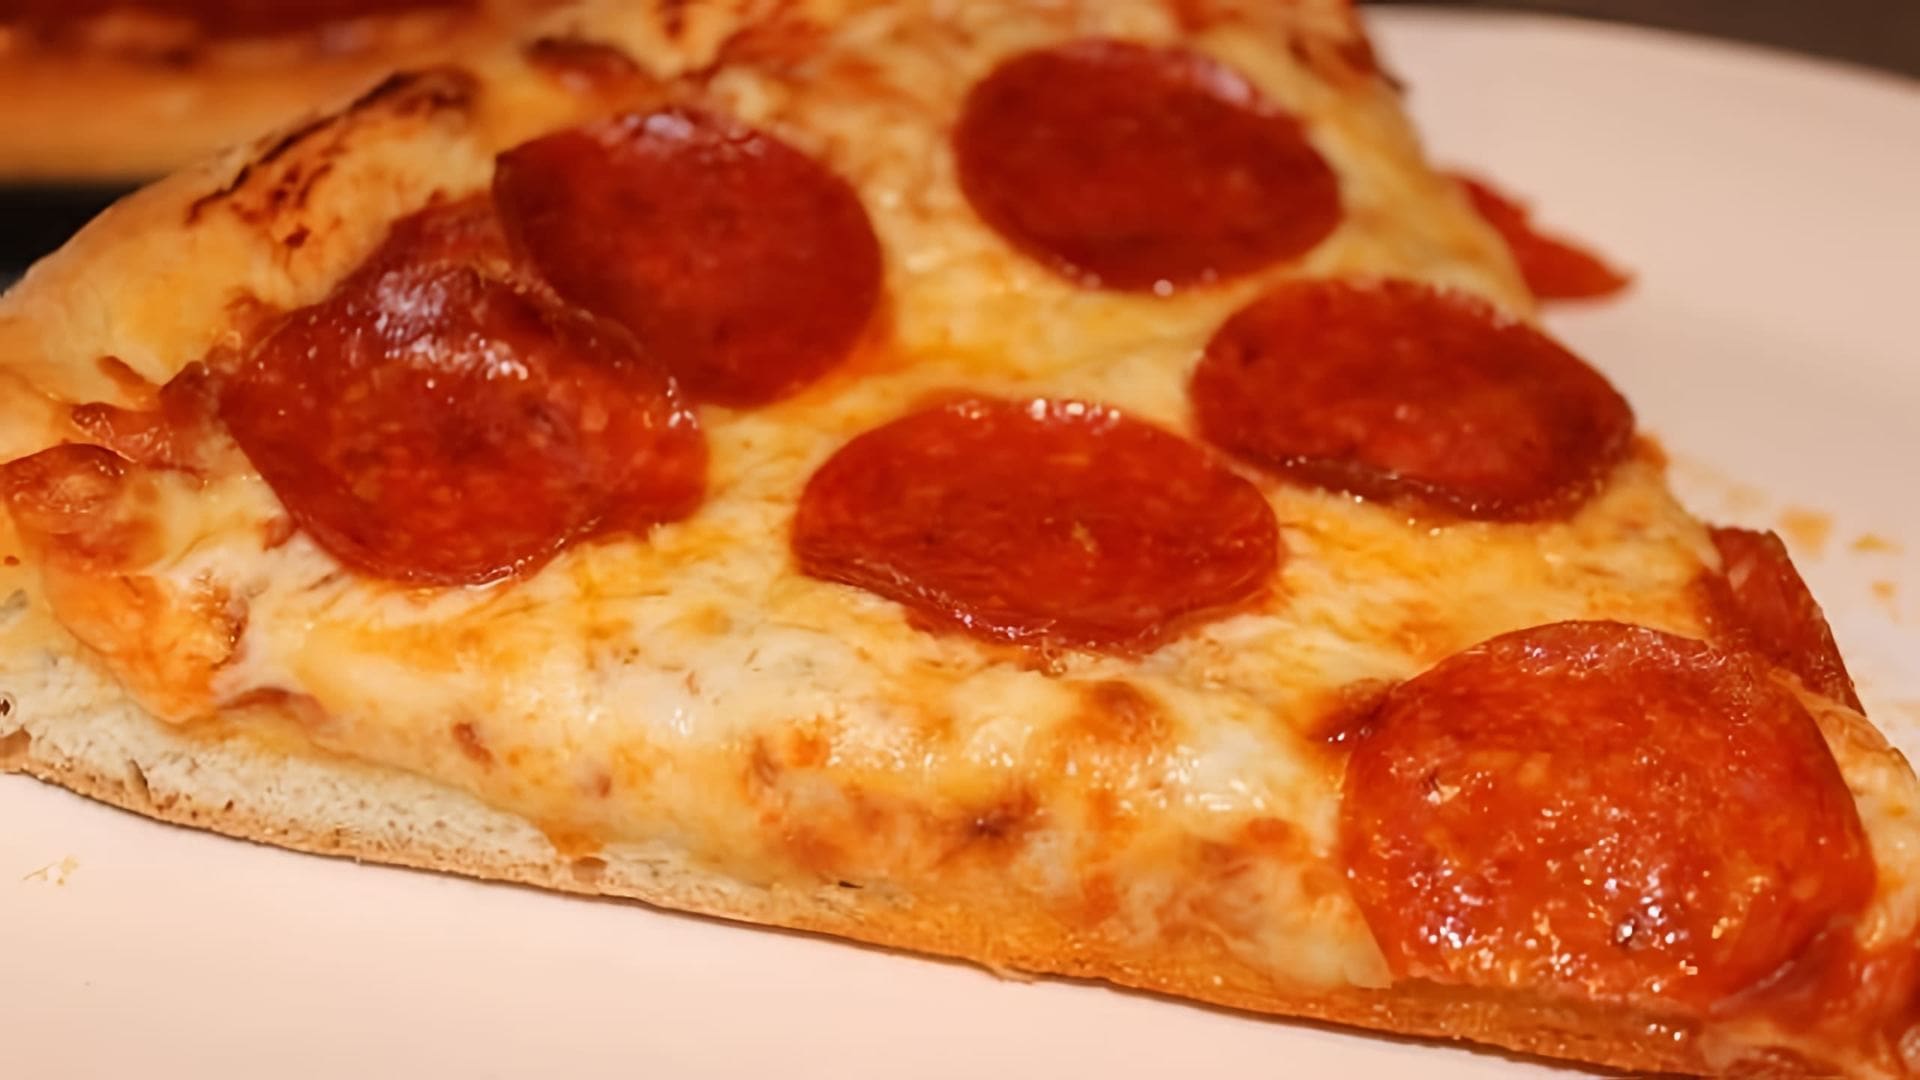 В данном видео демонстрируется процесс приготовления пиццы с начинкой из пепперони